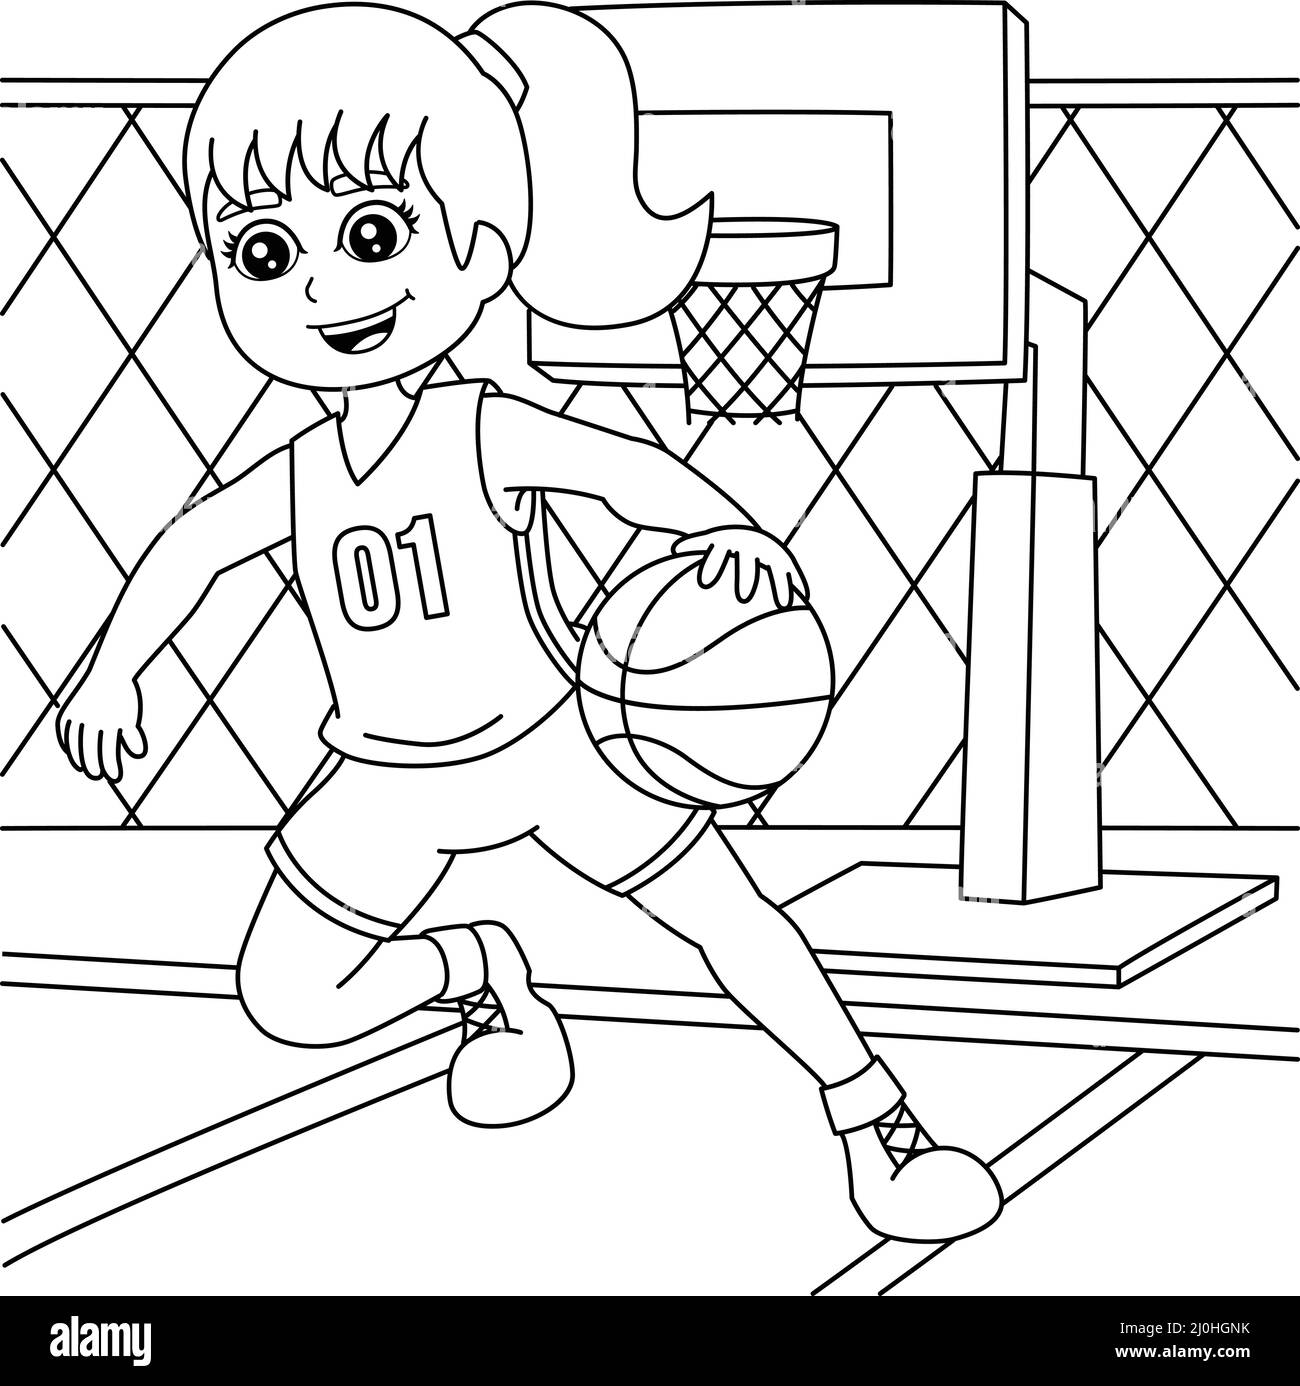 Sports Coloring Book: a Basketball Boy Throws a Ball into a